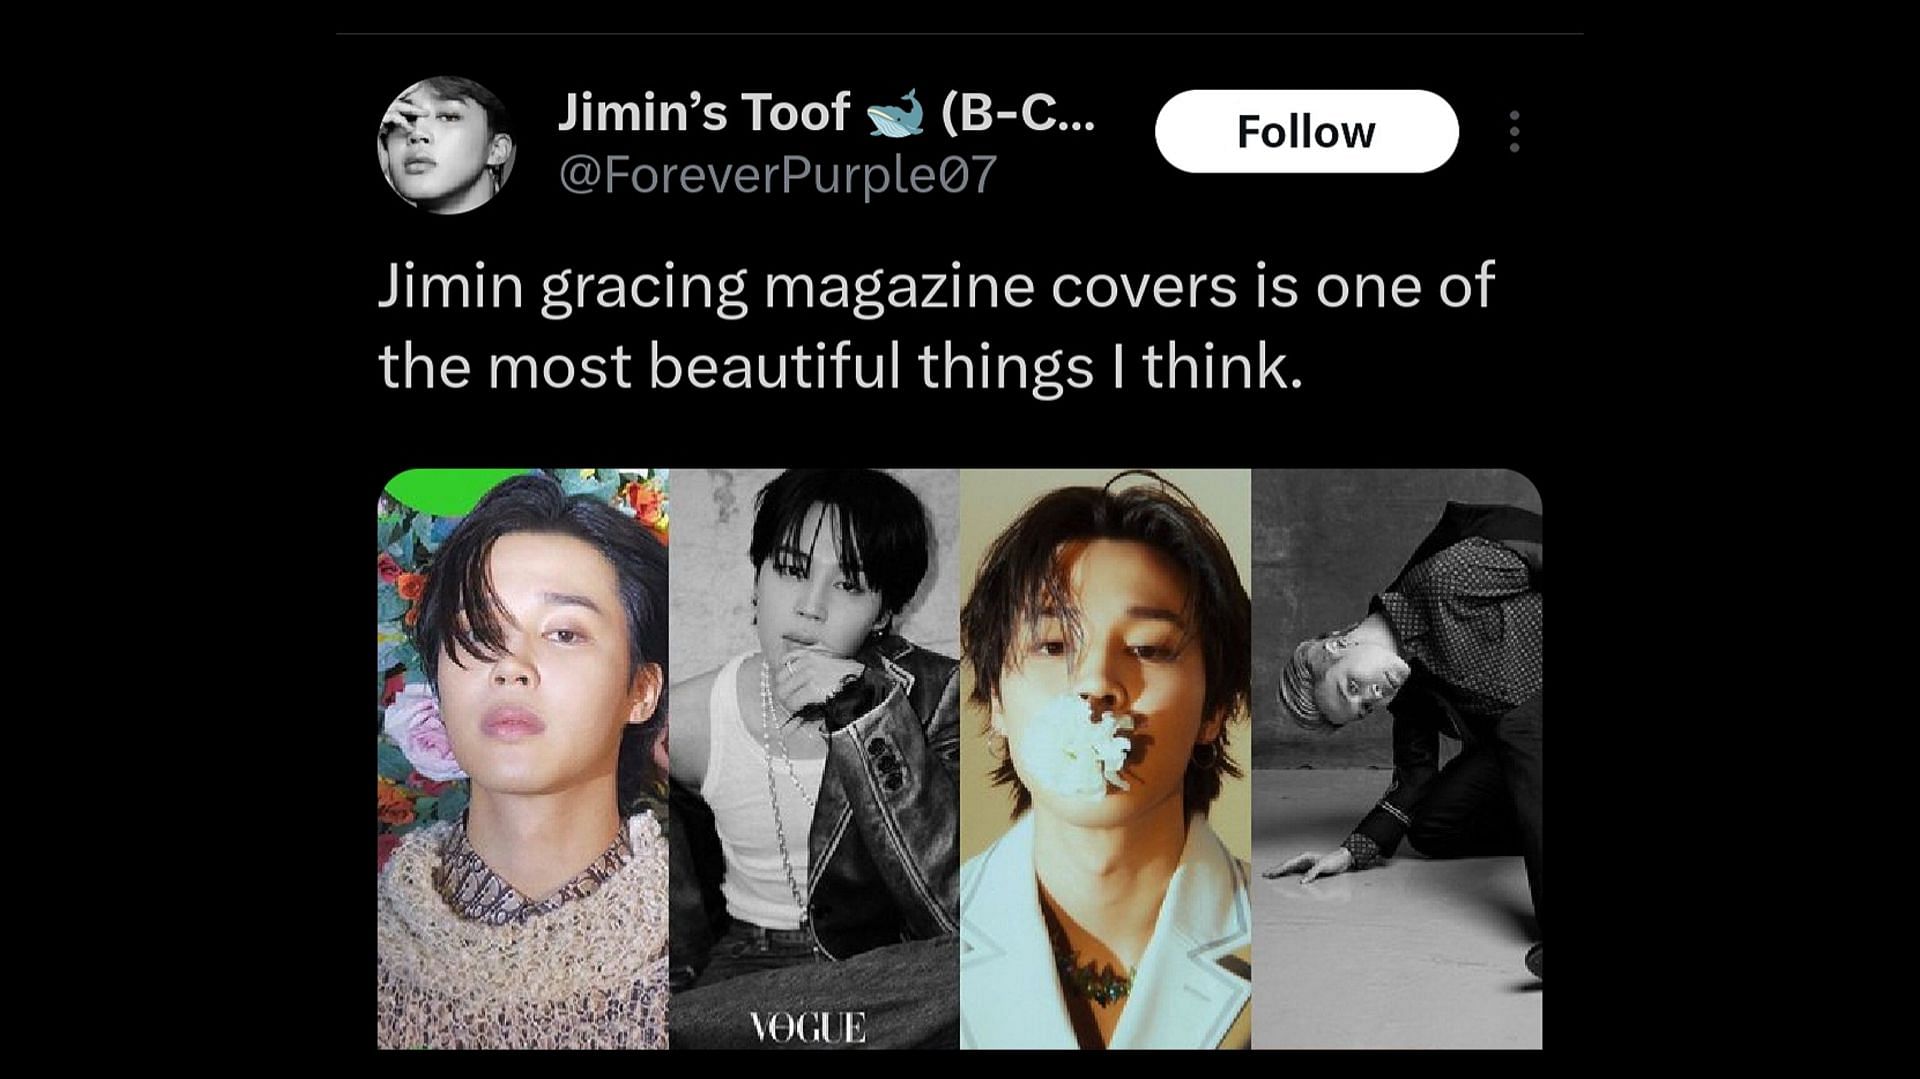 BTS JIMIN - GQ Korea Magazine Cover JIMIN (Nov 2023)